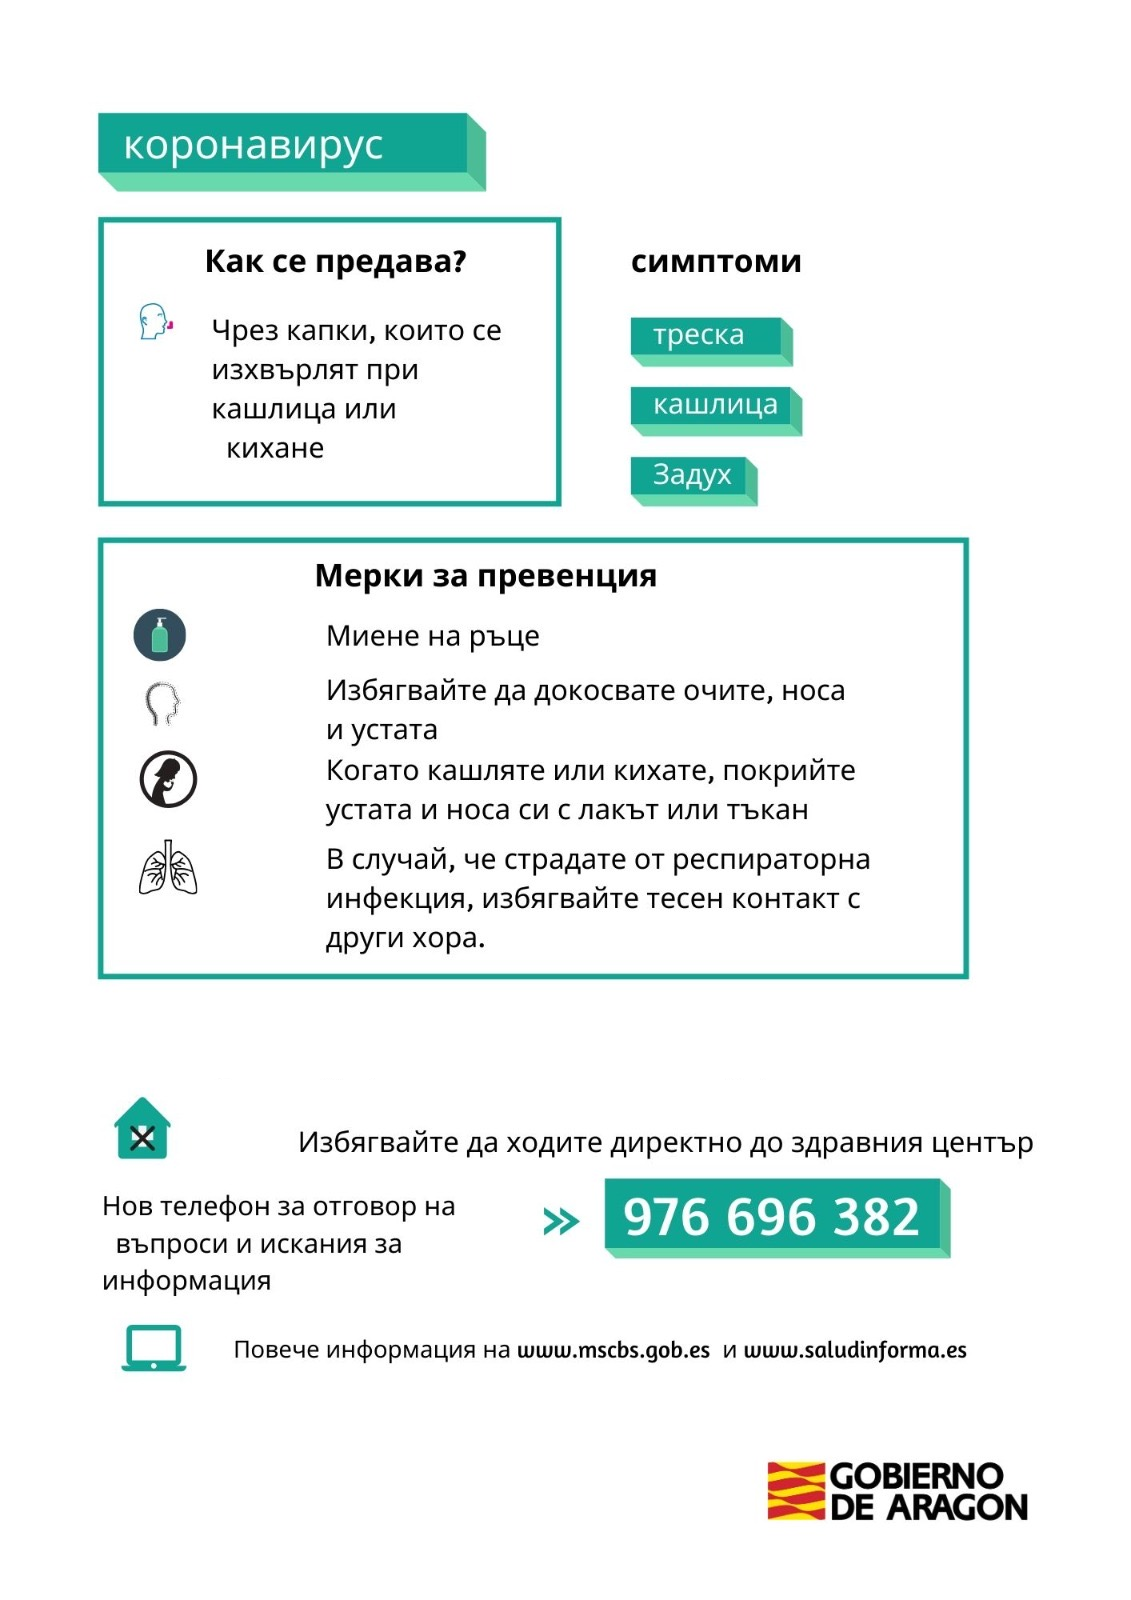 Información sobre el coronavirus en búlgaro